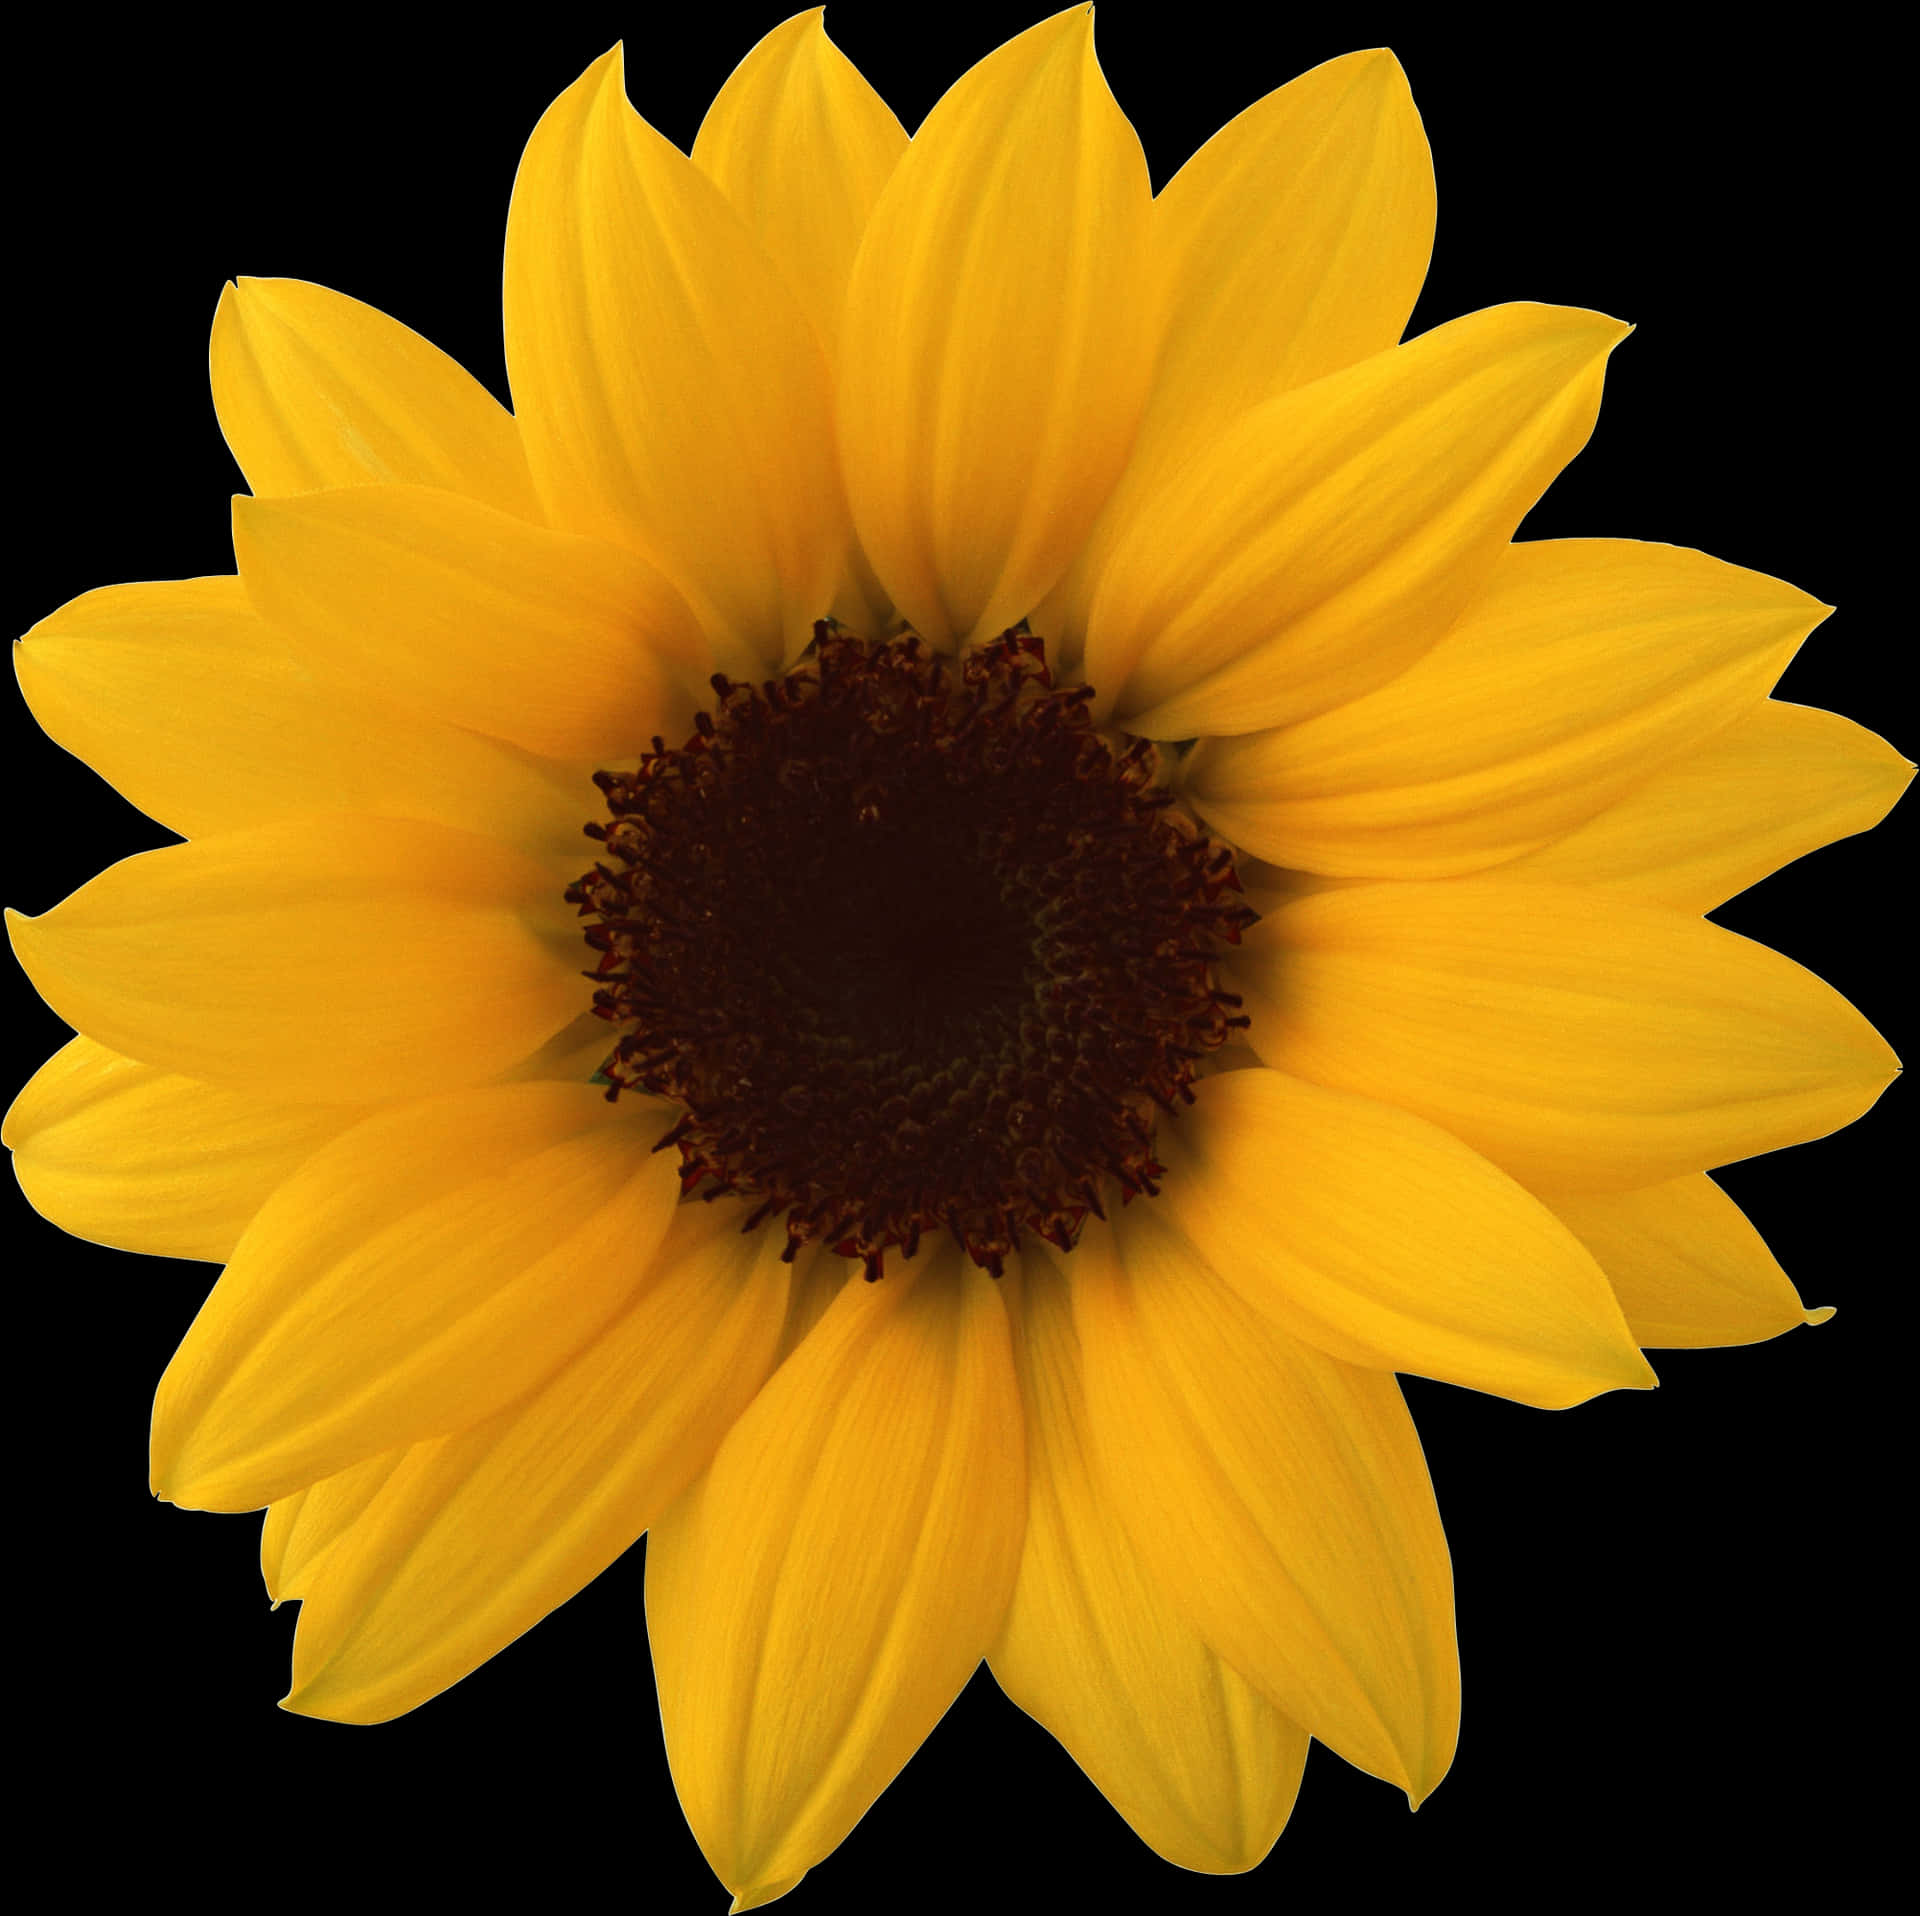 Vibrant_ Sunflower_ Against_ Black_ Background.jpg PNG image